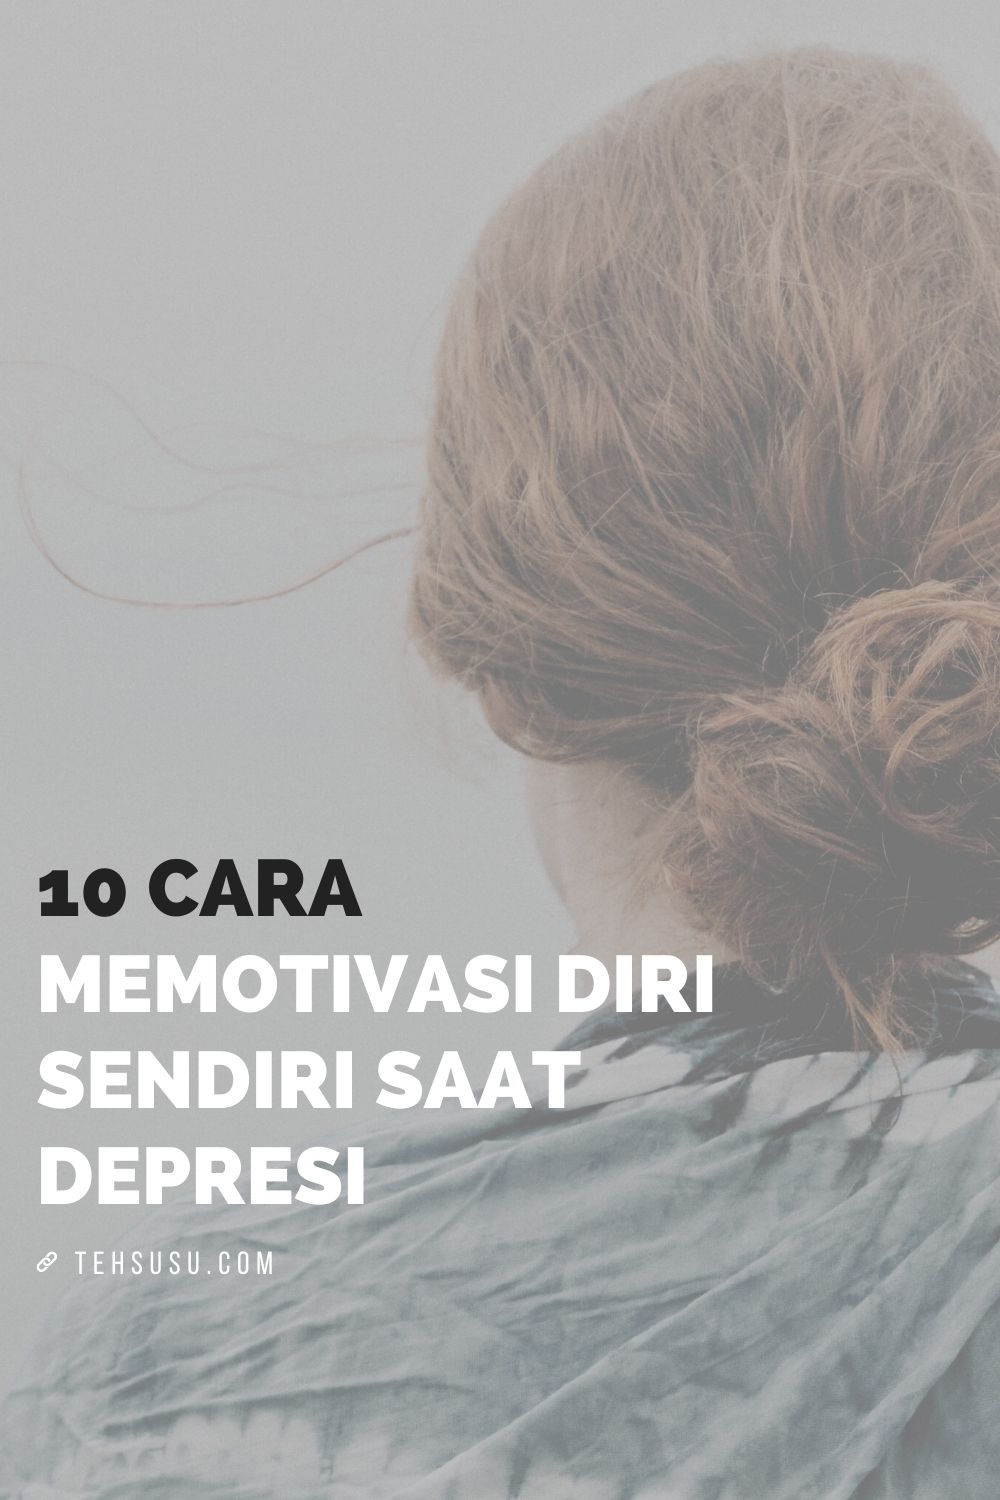 10 cara memotivasi diri saat depresi